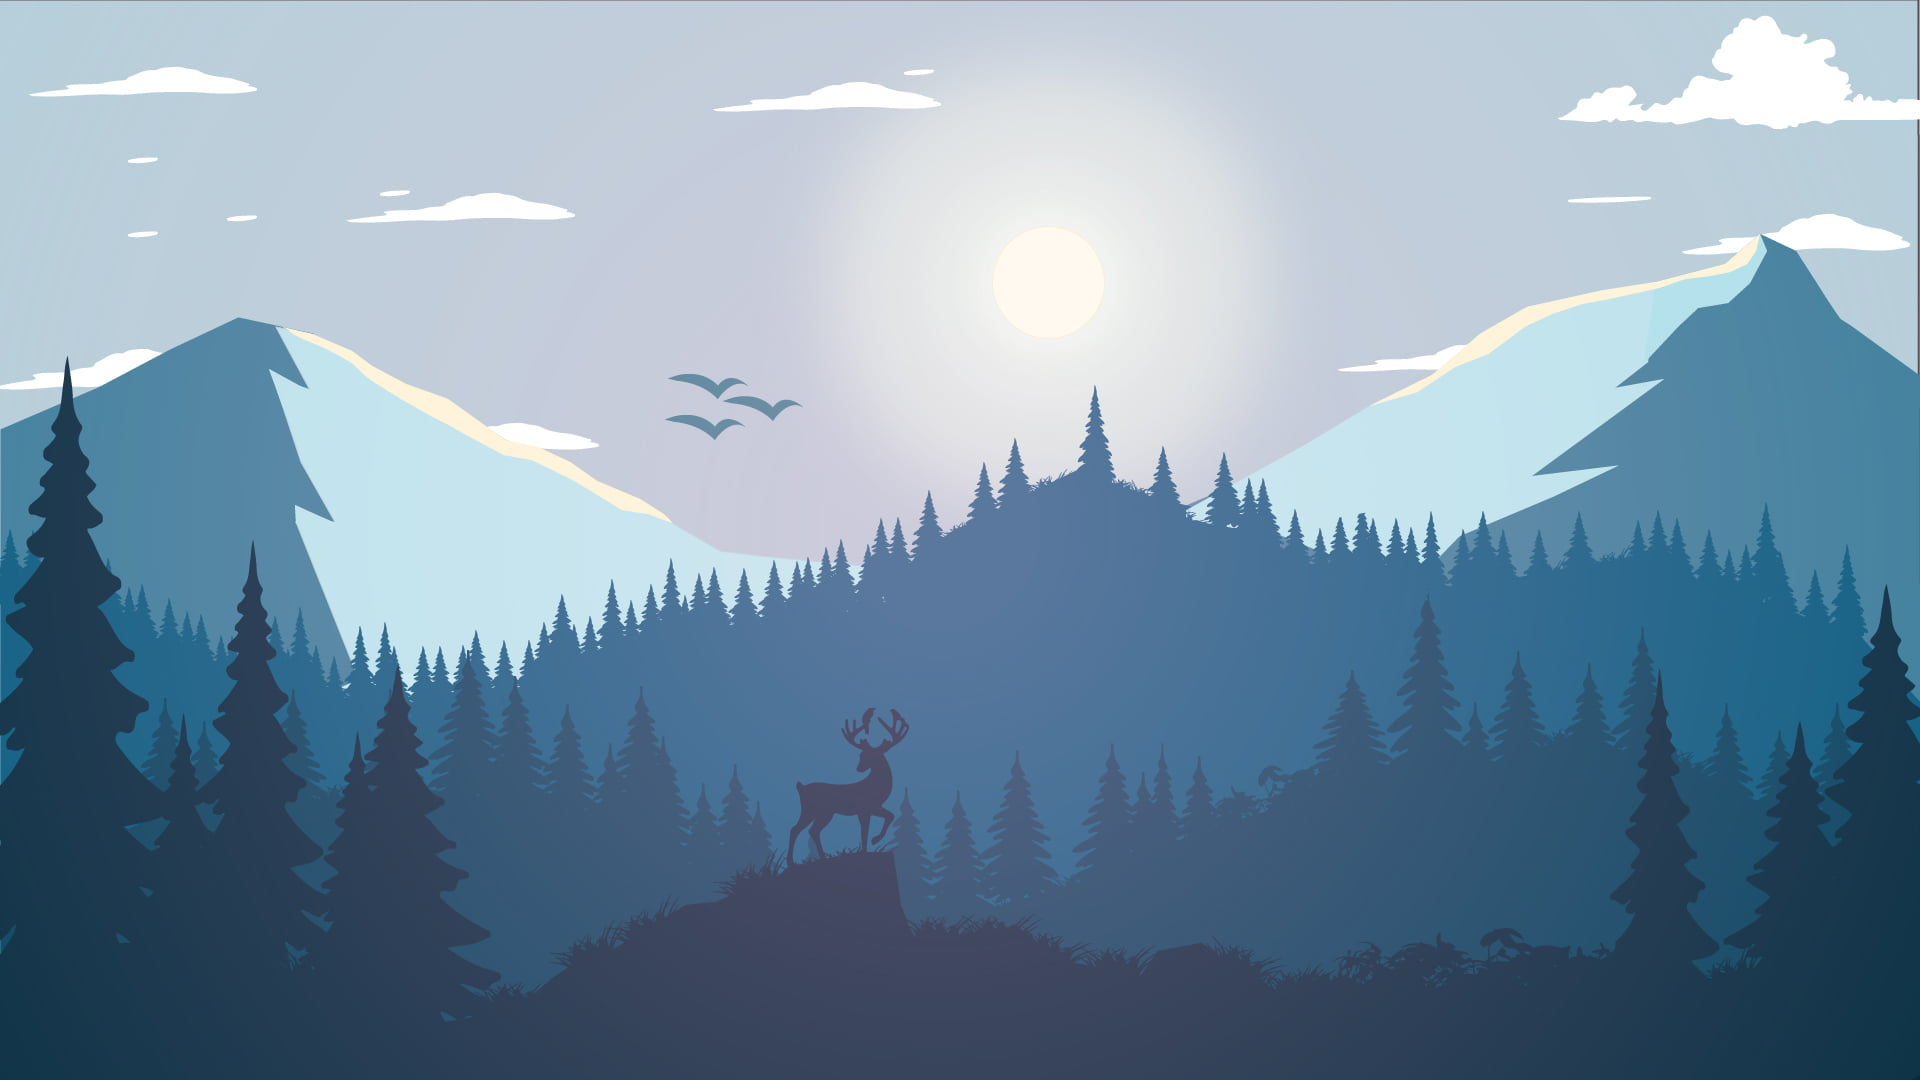 Deer on mountain wallpaper, silhouette of trees under white sky illustration